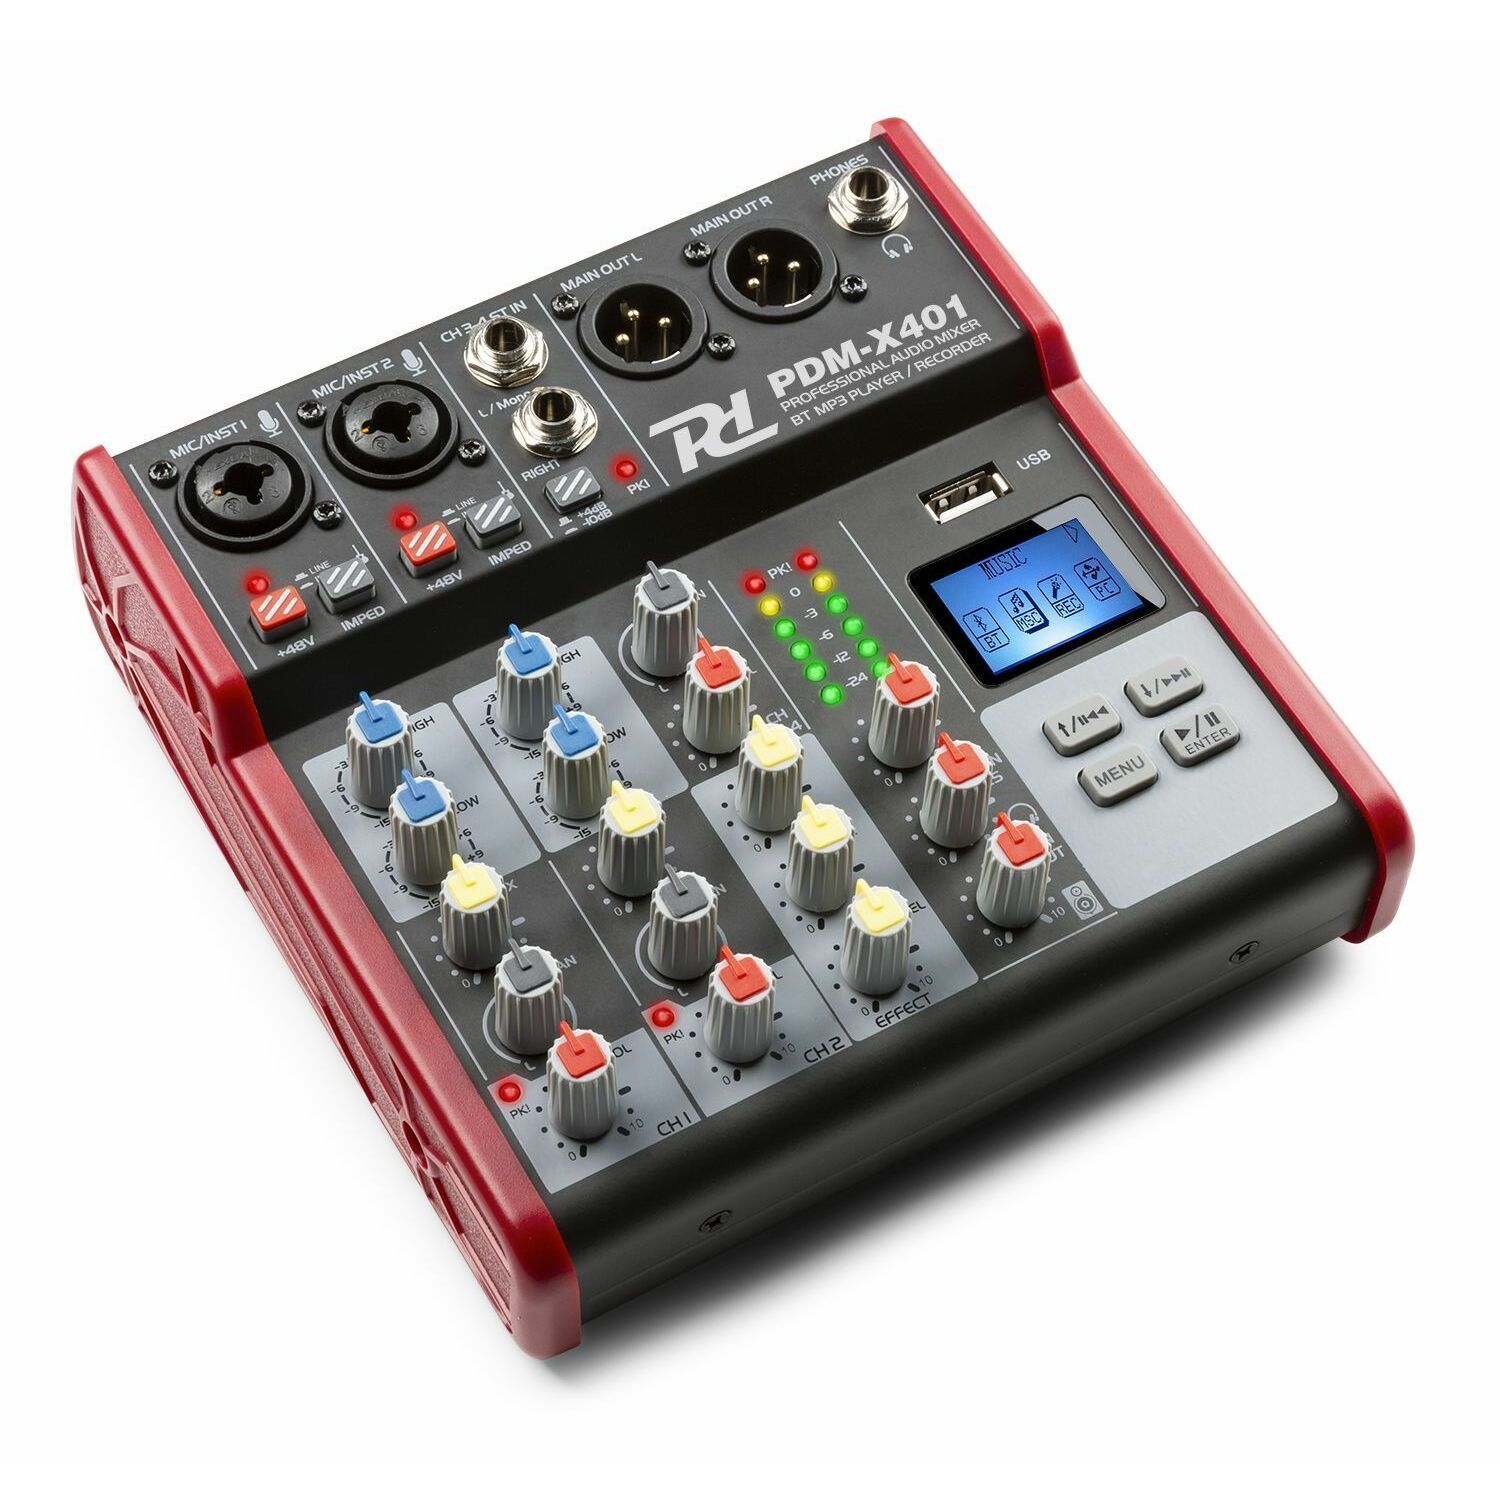 Retourdeal - Power Dynamics PDM-X401 - 4 kanaals mixer met Bluetooth